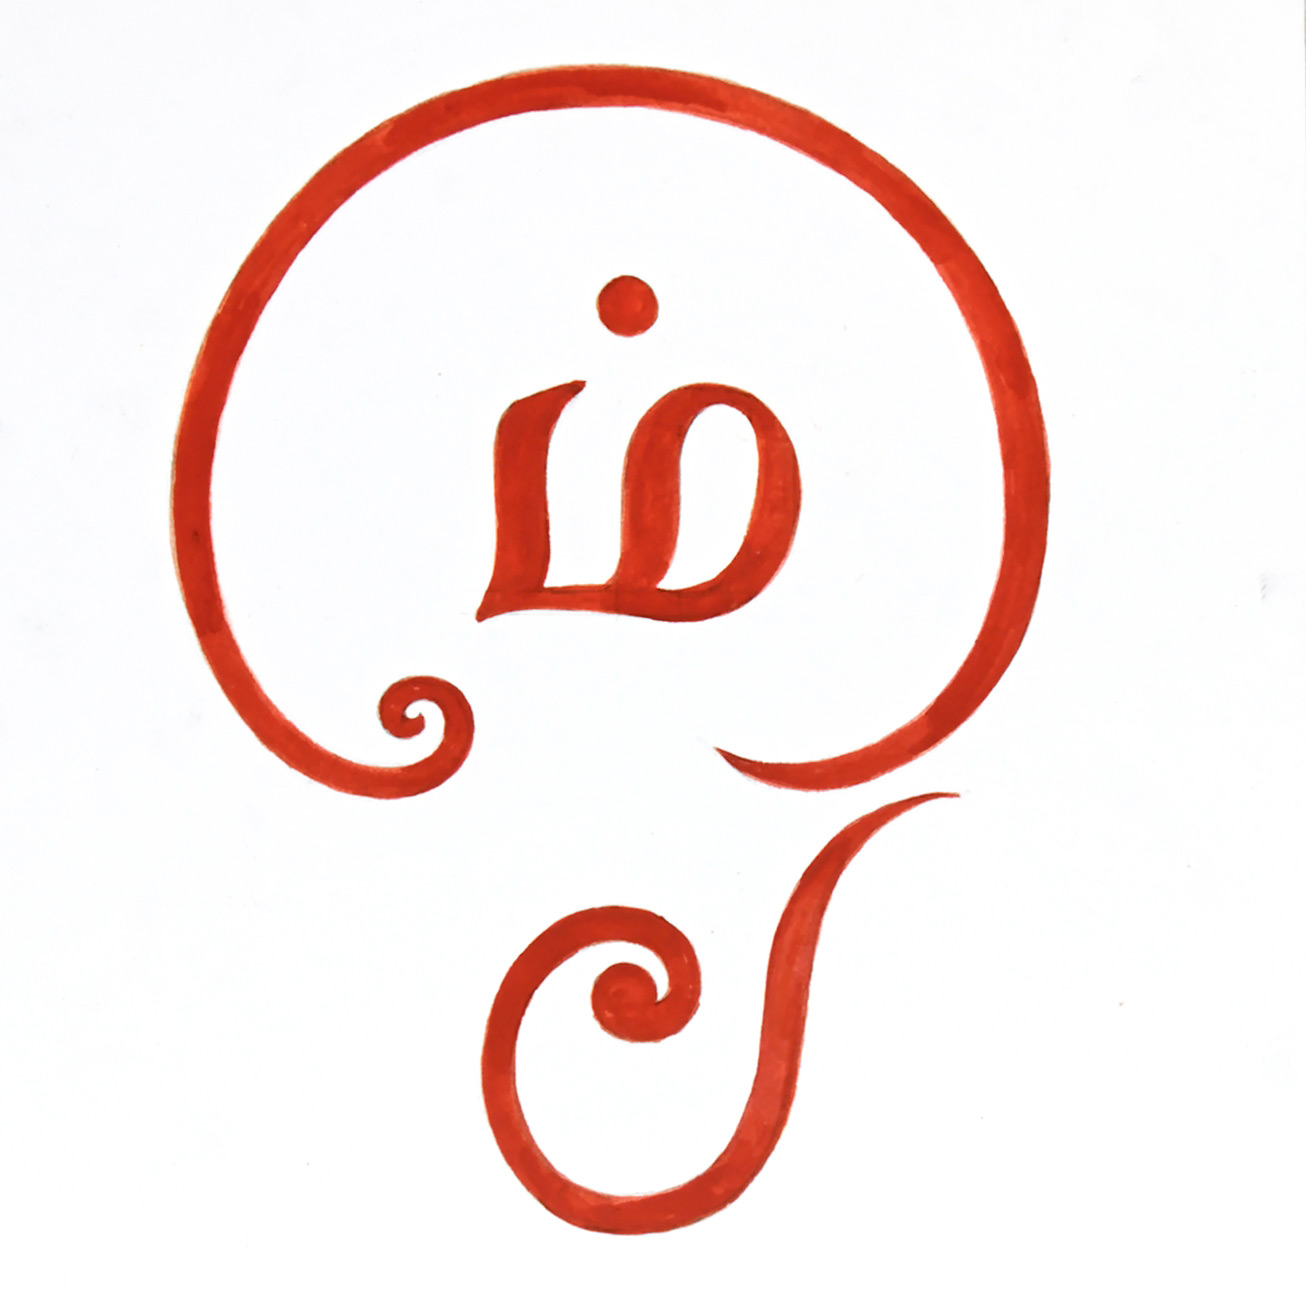 tamil om symbol